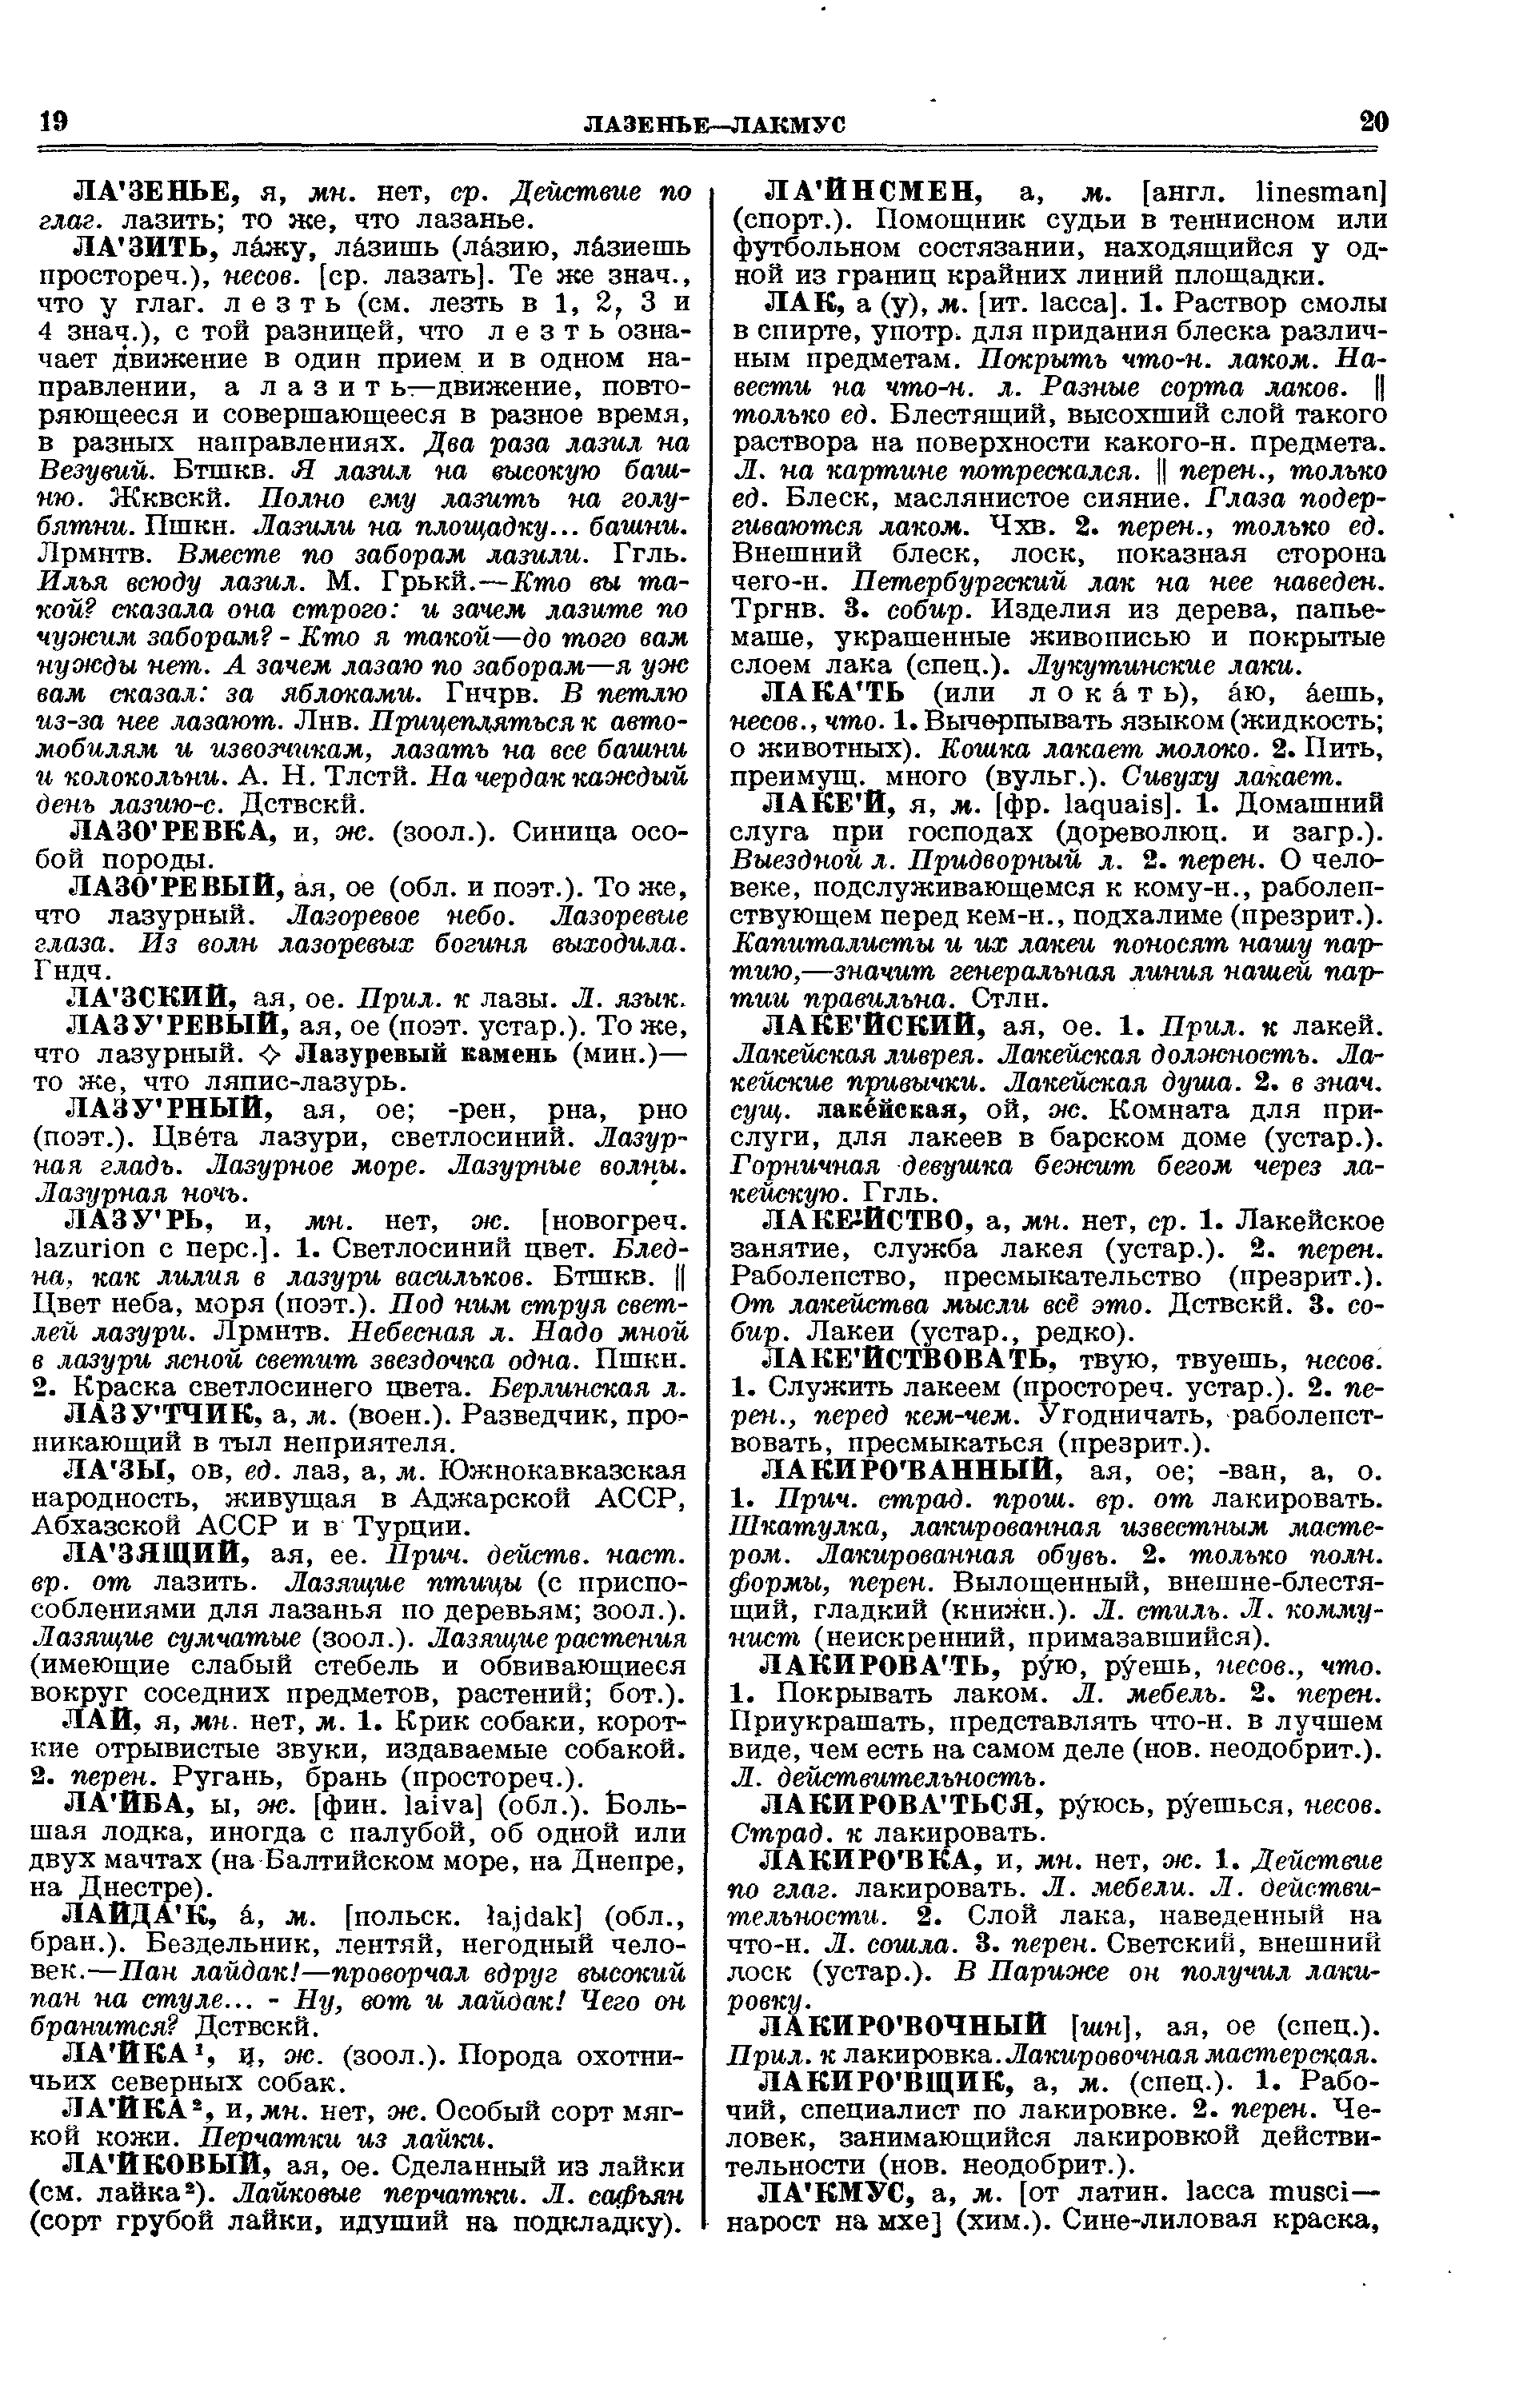 Фотокопия pdf / скан страницы 10 толкового словаря Ушакова (том 2)